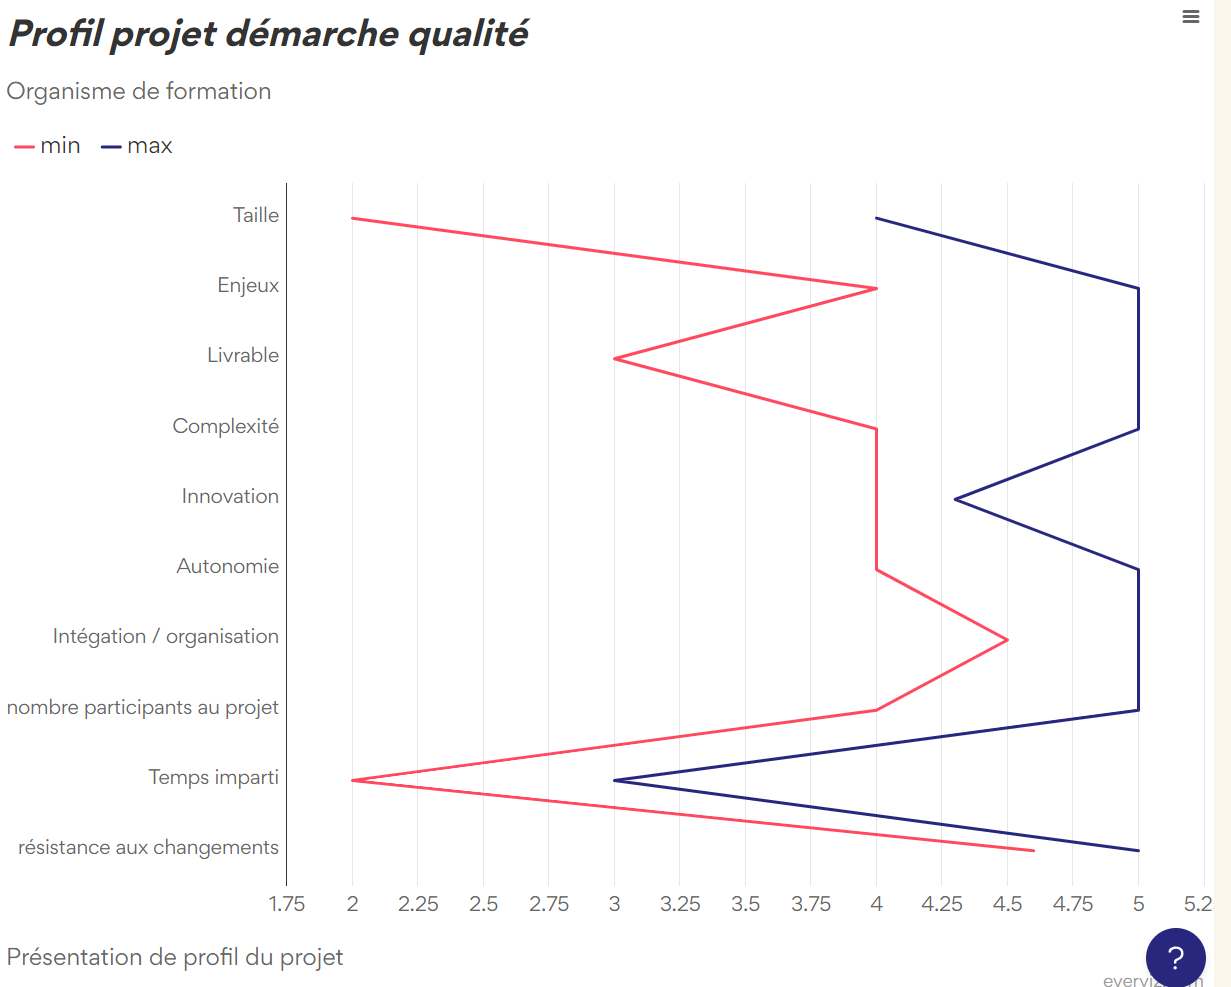 Profil projet démarche qualité - Line chart